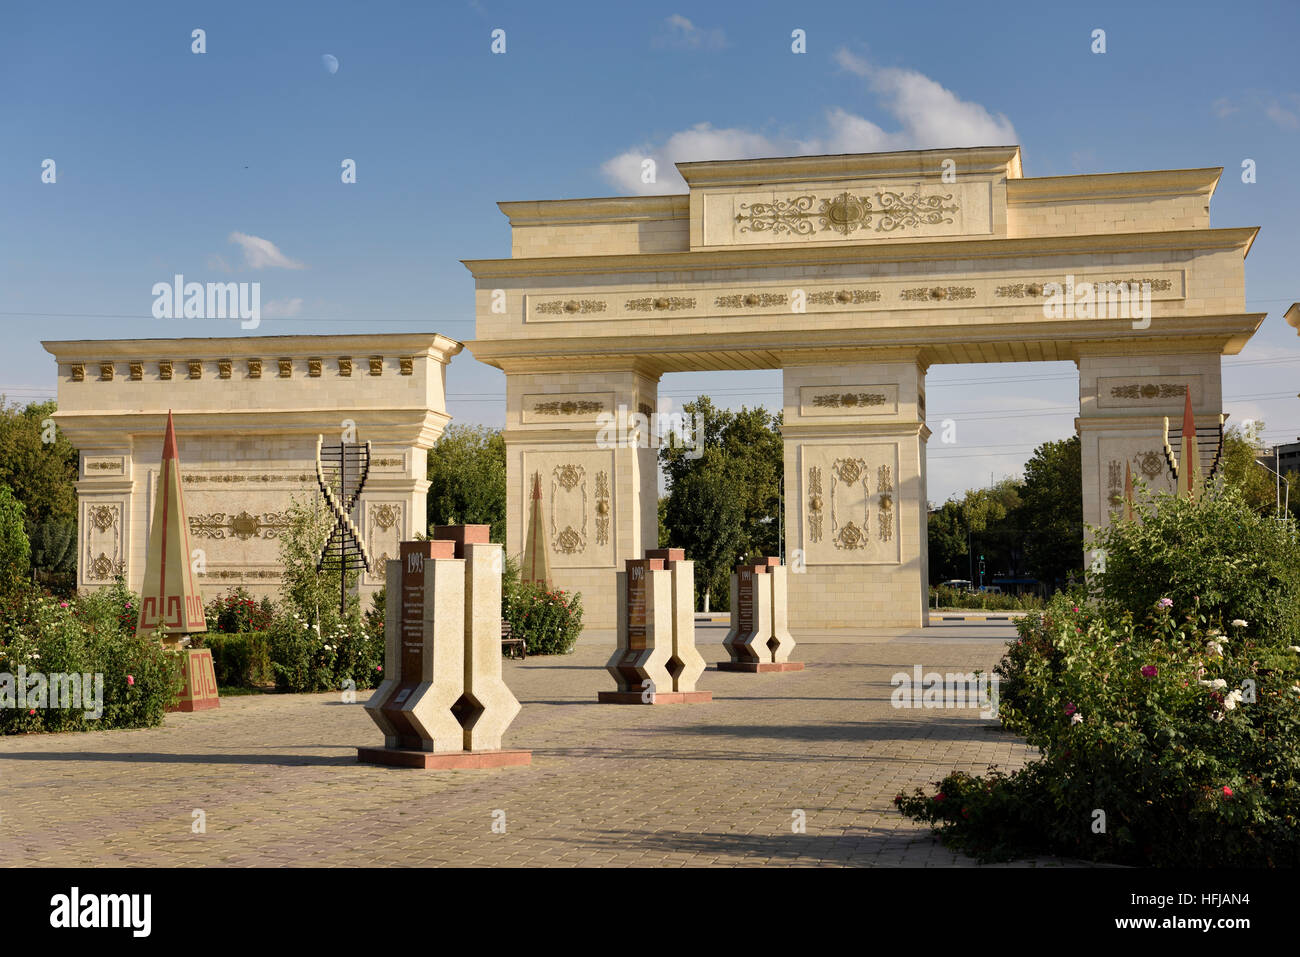 Portes ornées de Parc de l'indépendance du Kazakhstan Shymkent avec stèles de granit avec 20 ans d'histoire 1991 à 2011 Banque D'Images